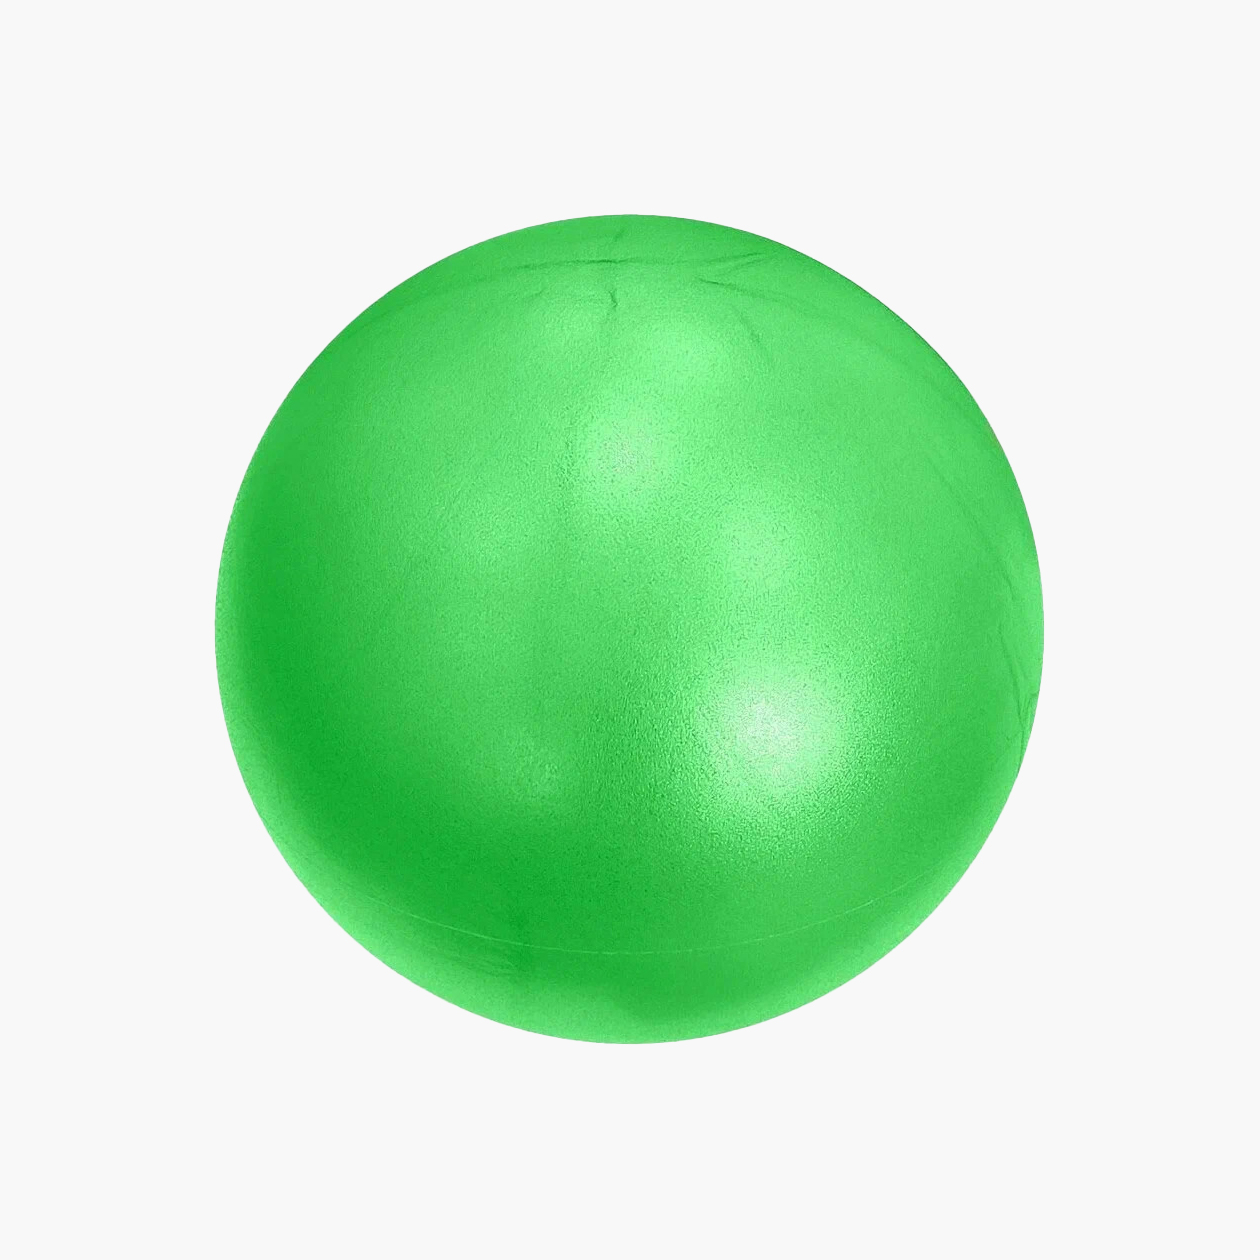 Можно поискать мяч с детским рисунком или выбрать однотонный. Источник: market.yandex.ru